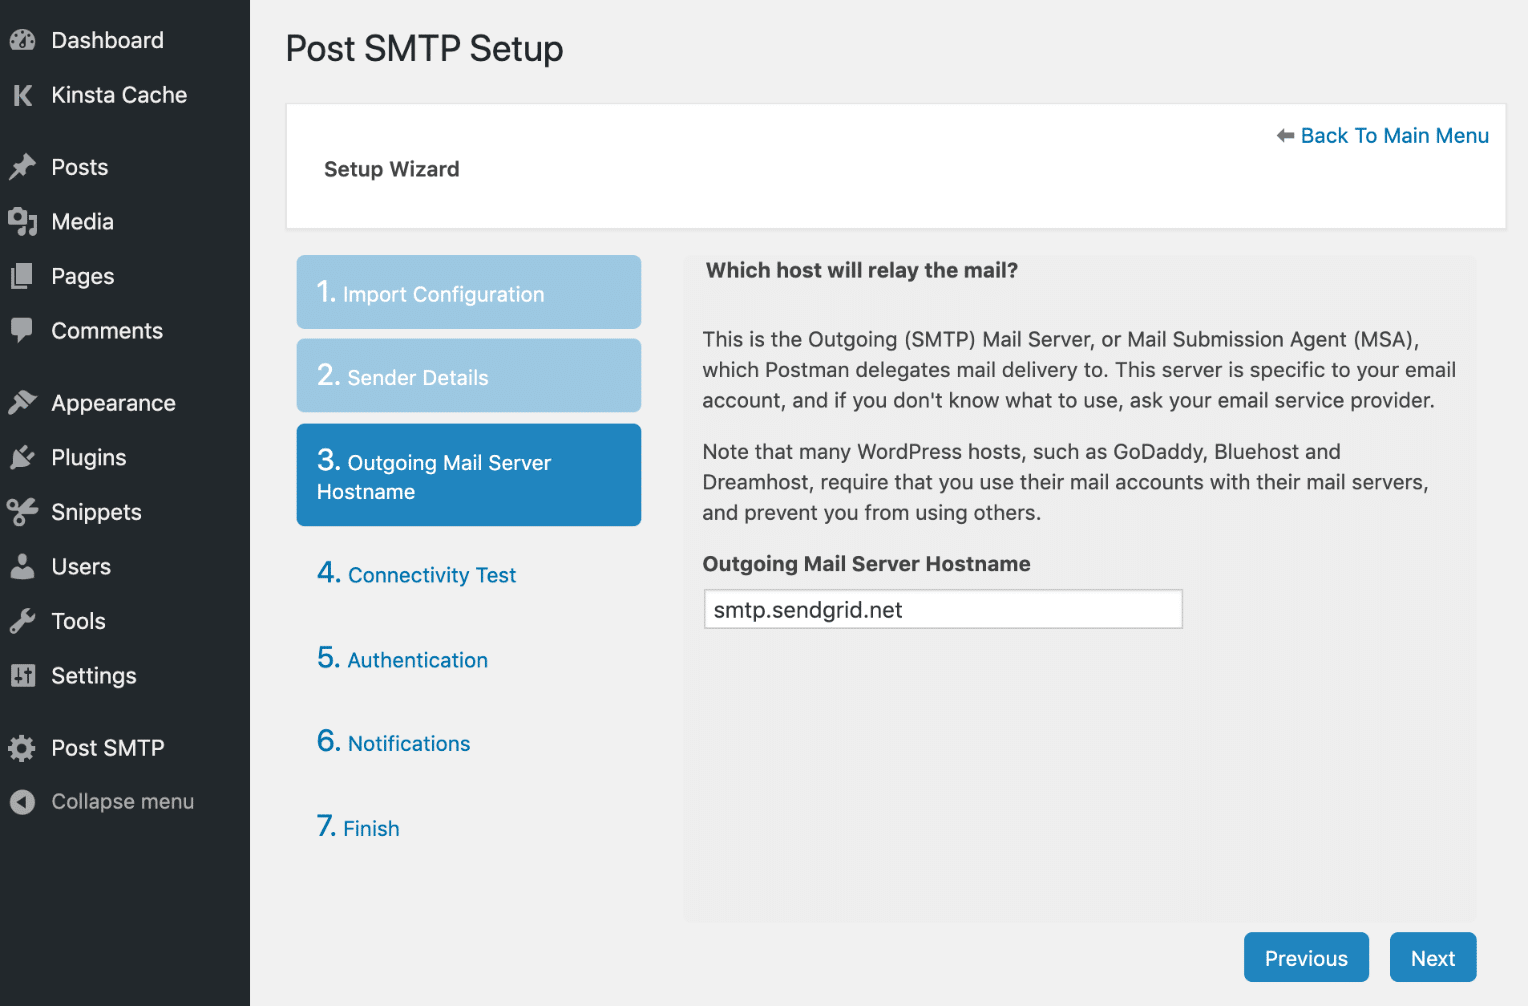 Post SMTP - Outgoing Mail Server Hostname (Nom d'hôte du serveur de courrier sortant)